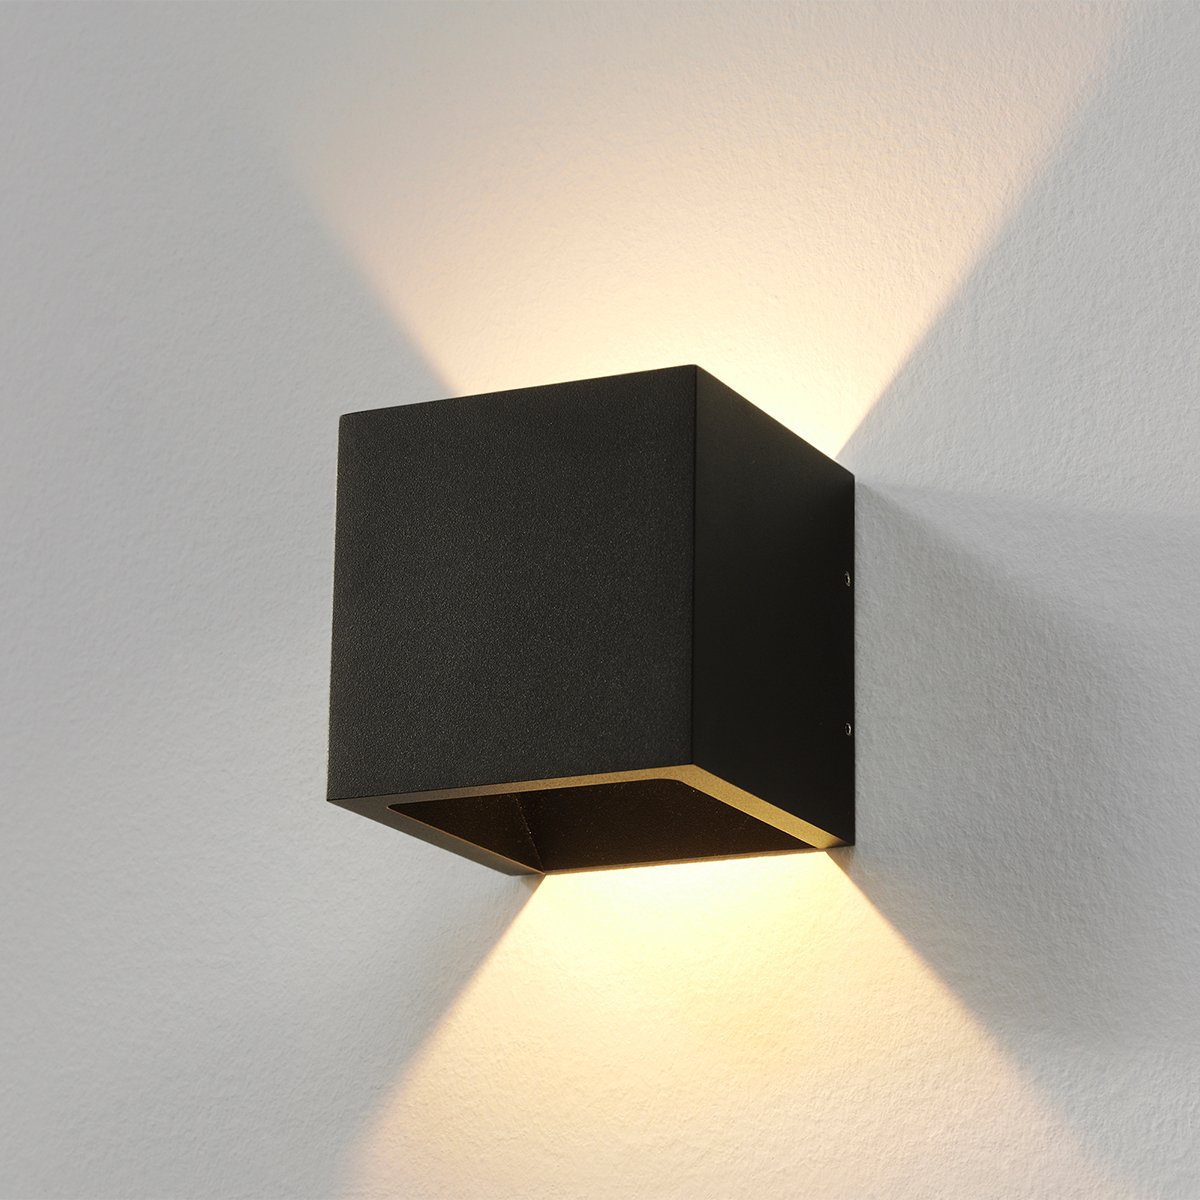 Muurverlichting Wandlamp Cube up down zwart Torno - 10 cm